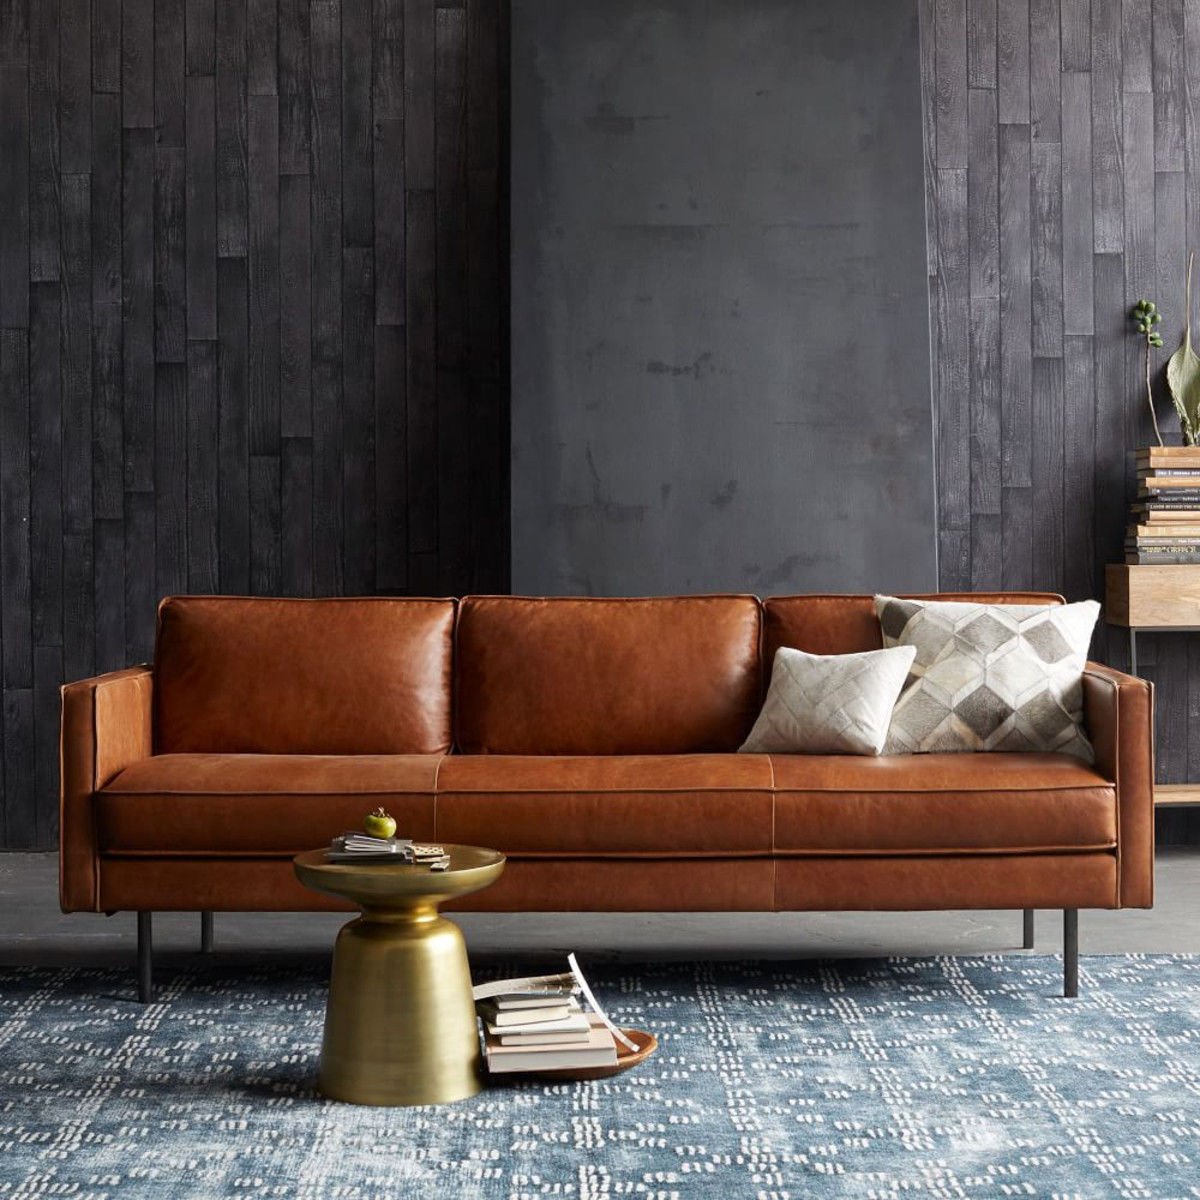 Chiếc ghế sofa băng dài chất liệu da sẽ là nơi nghỉ ngơi thú vị trong ngôi nhà của bạn